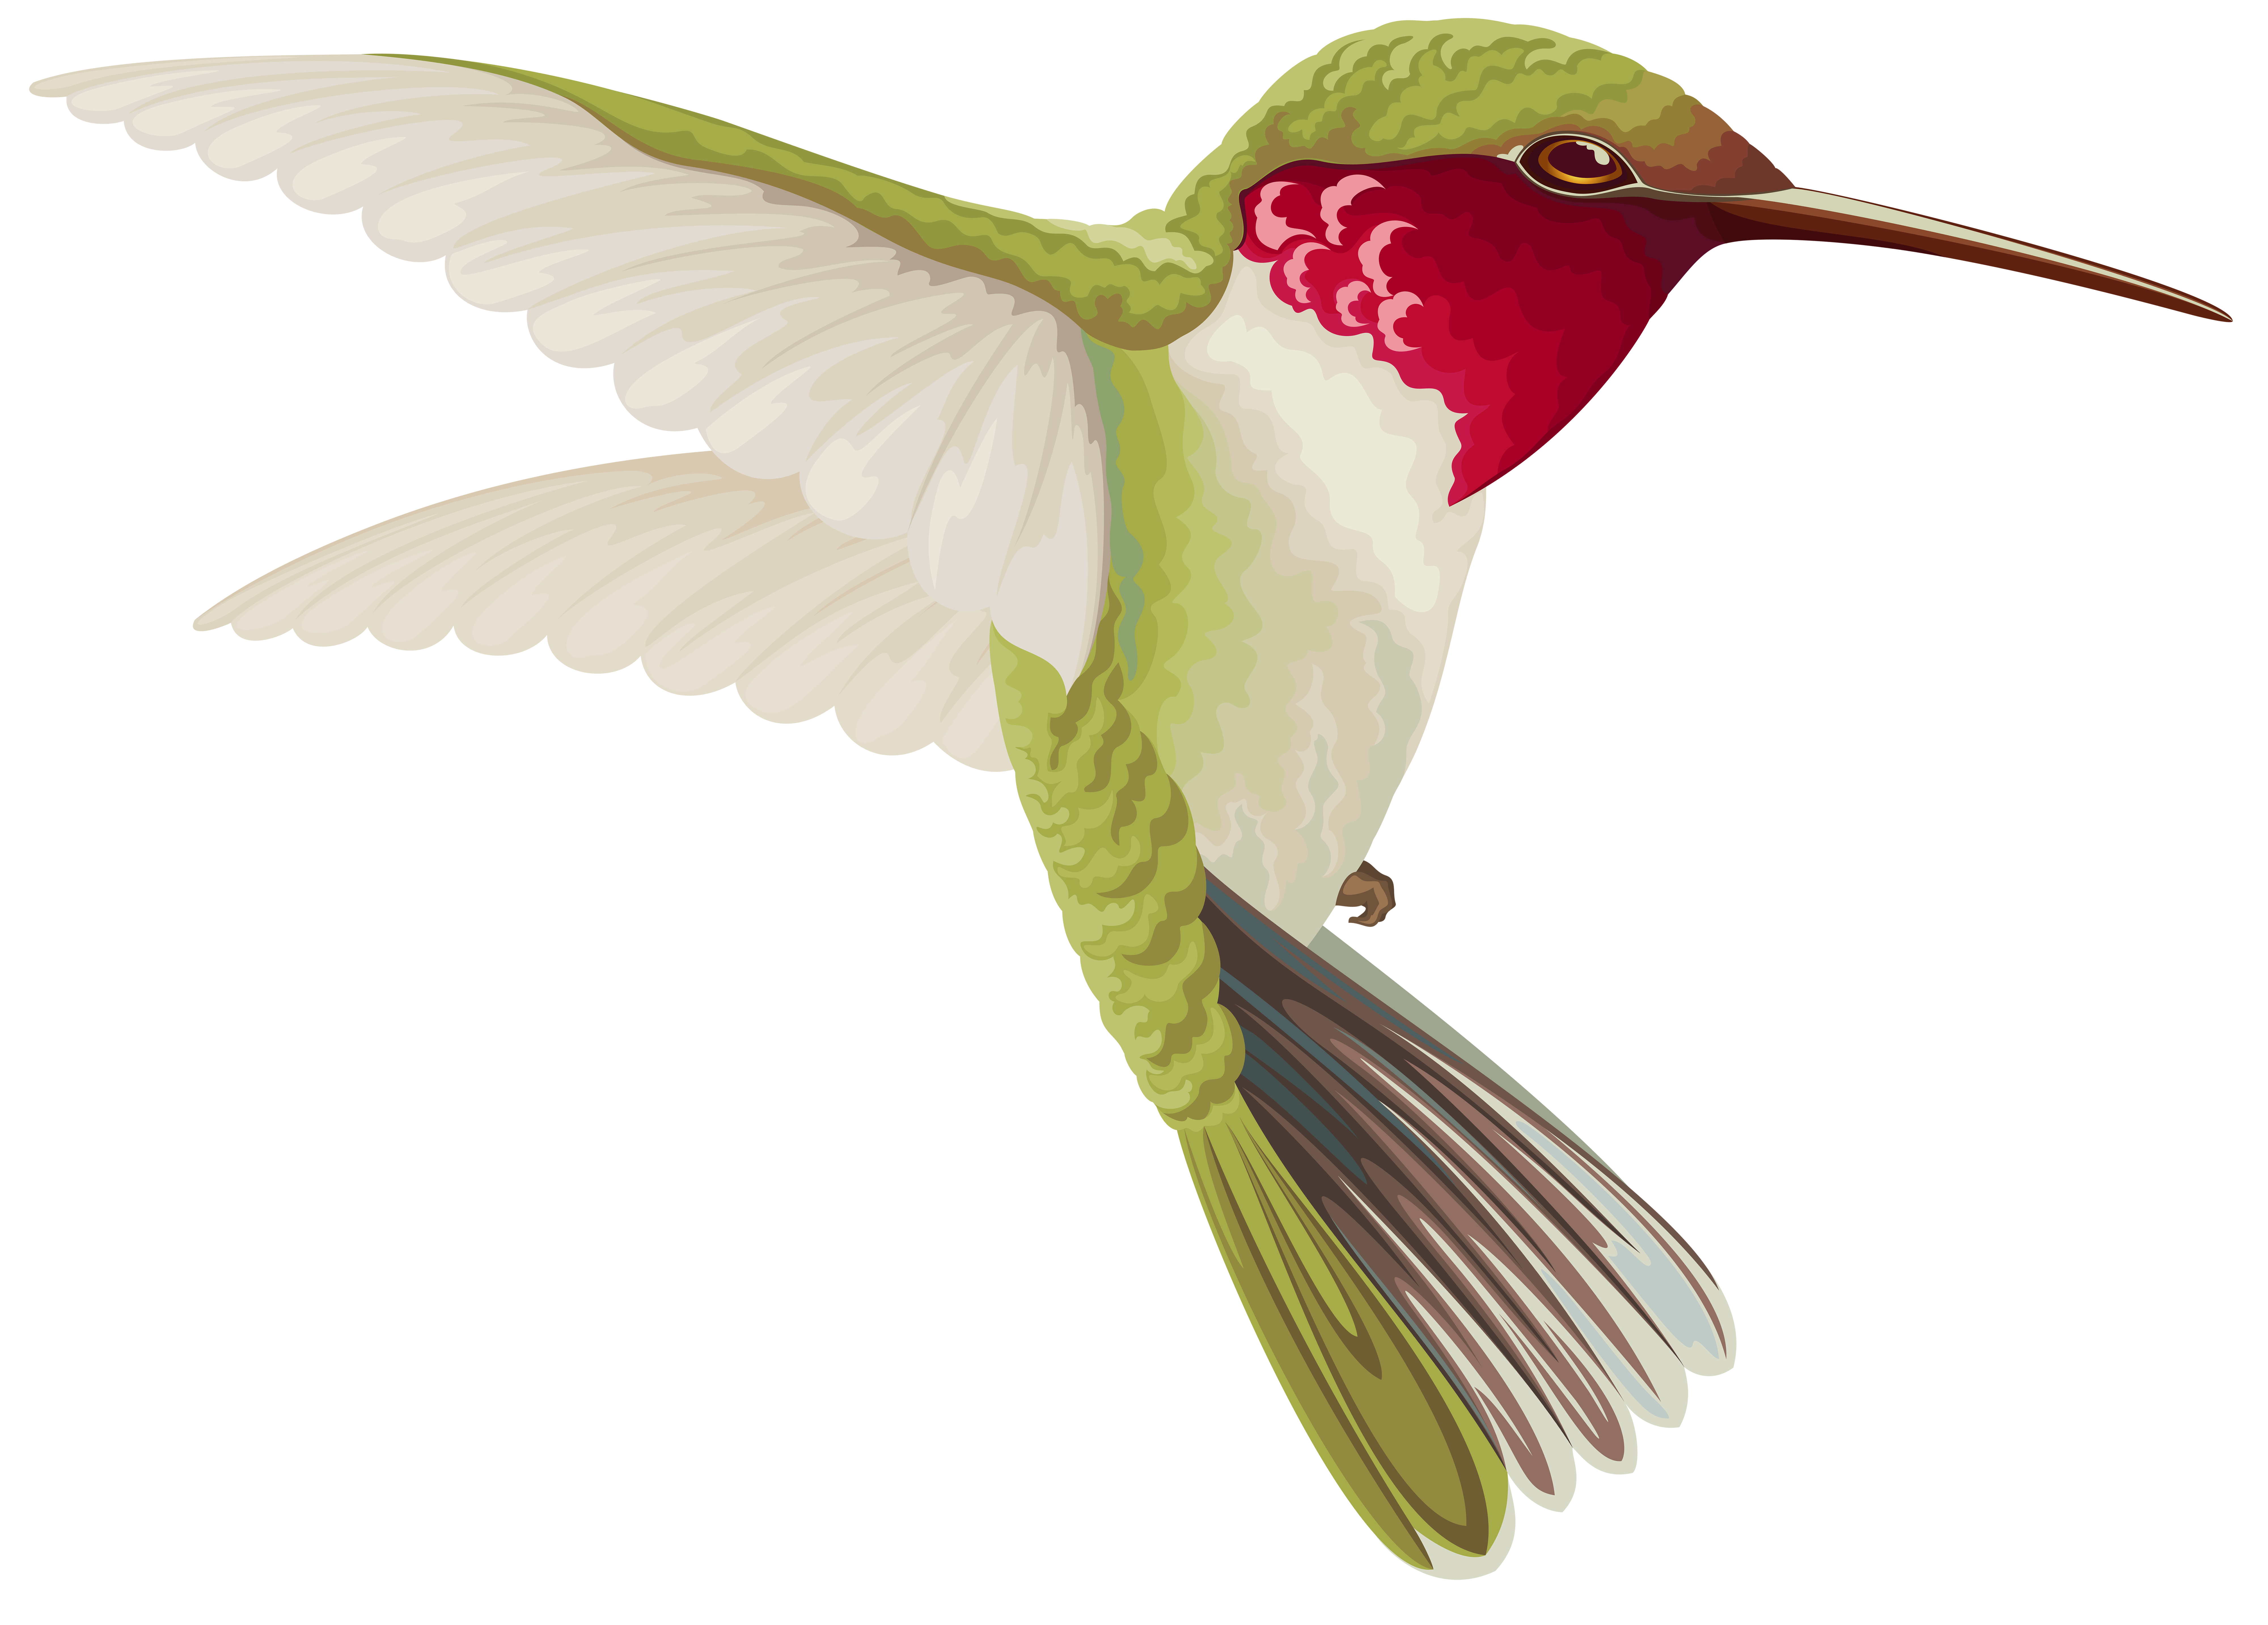 Hummingbird Clip art - Humming Bird Transparent Clip Art Image png download  - 8000*5732 - Free Transparent Hummingbird png Download. - Clip Art Library